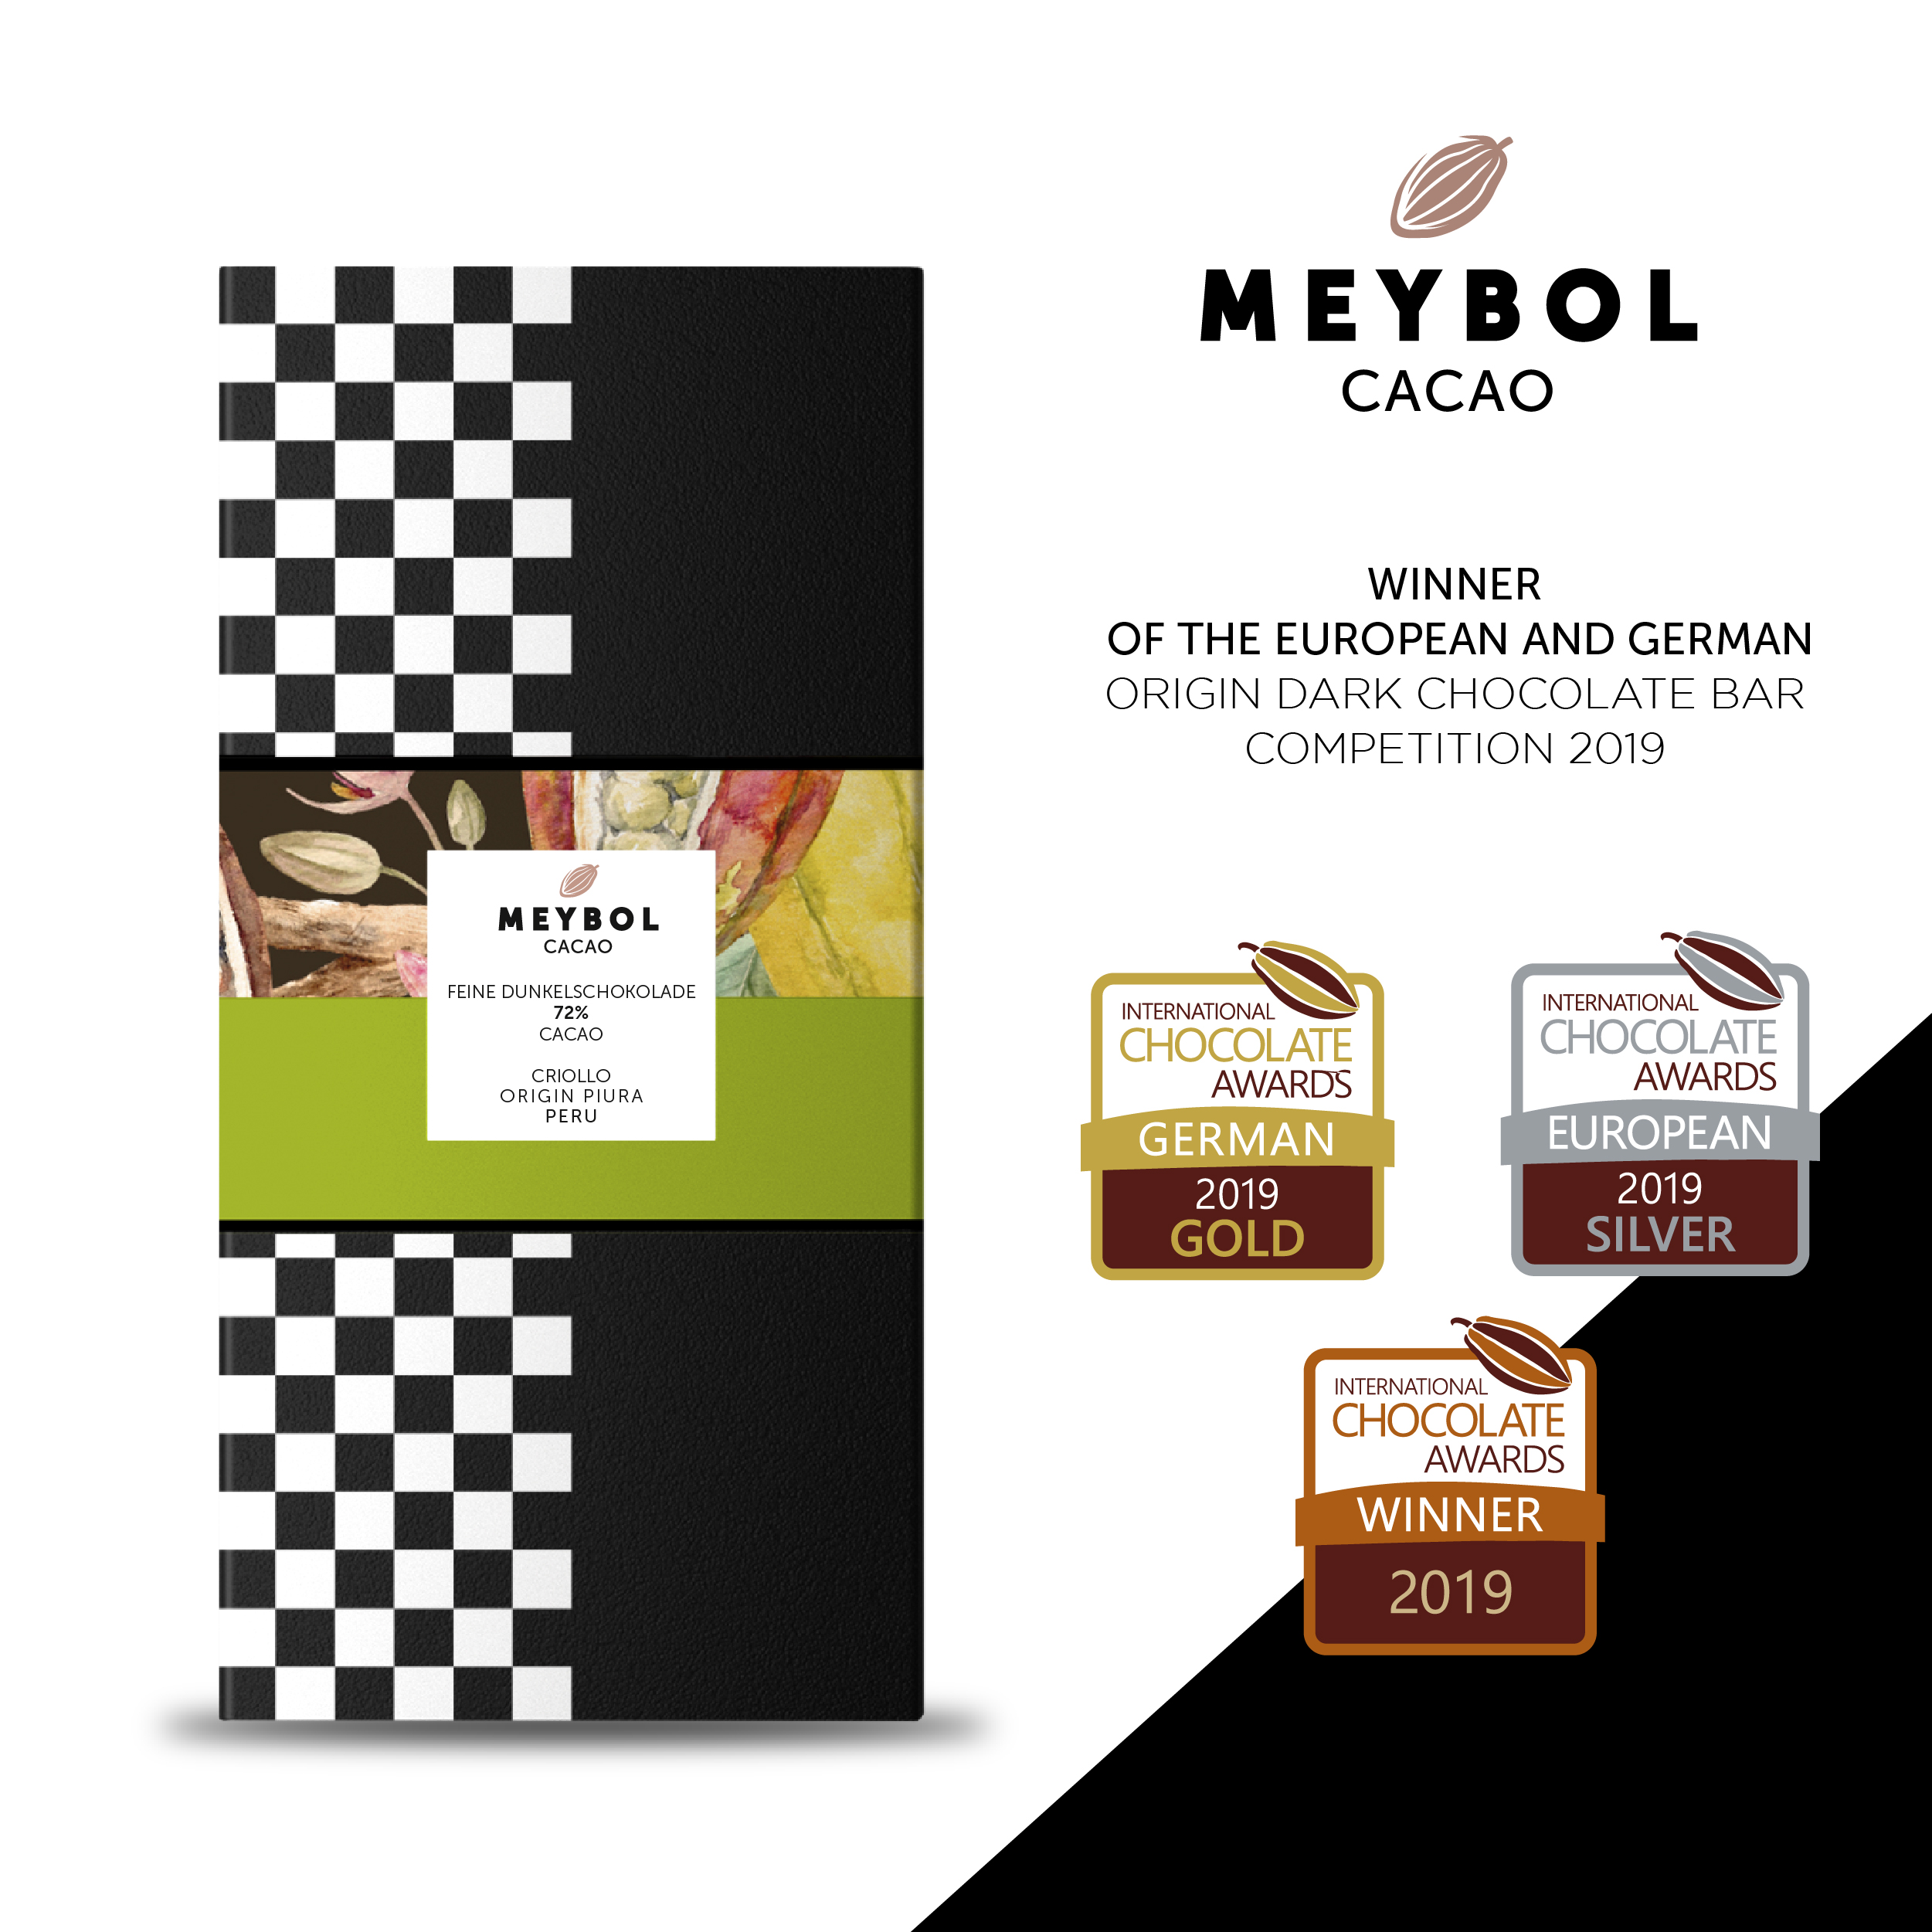 MEYBOL Cacao | Schokolade »Criollo Piura Peru« 72% | 70g